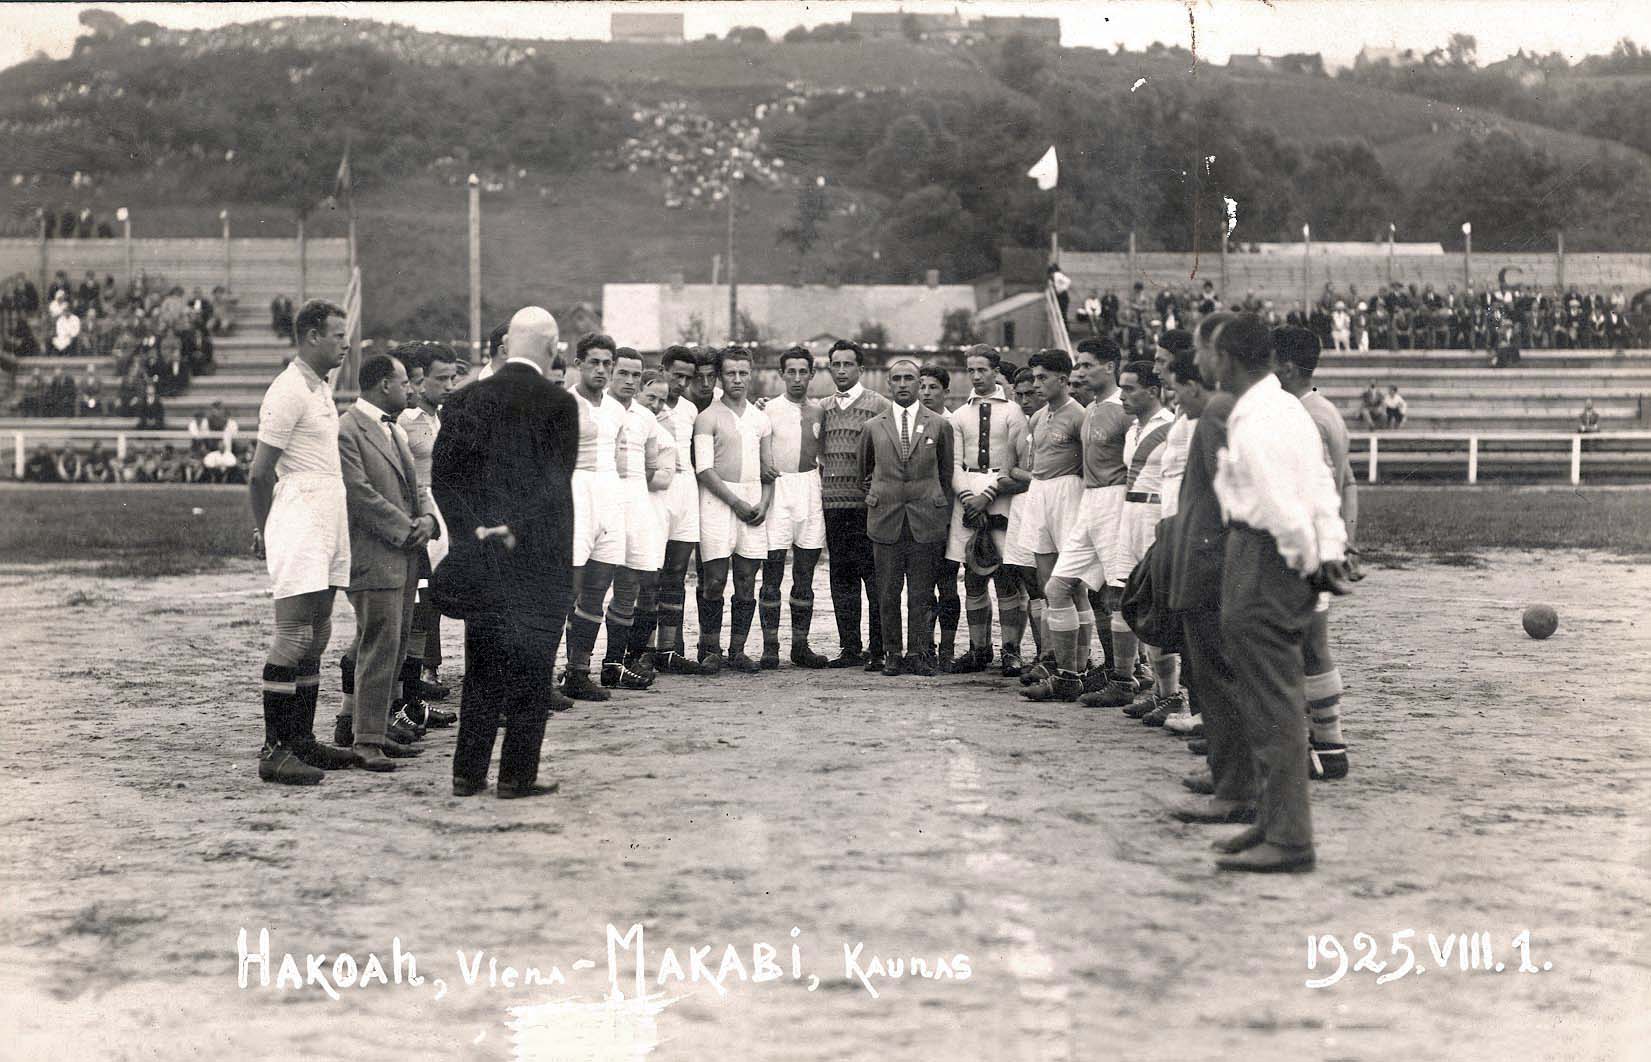 Kaunas, Lituania. Partido de fútbol entre "Hakoaj" Vienna y el "Macabi"  local ,1.8.1925